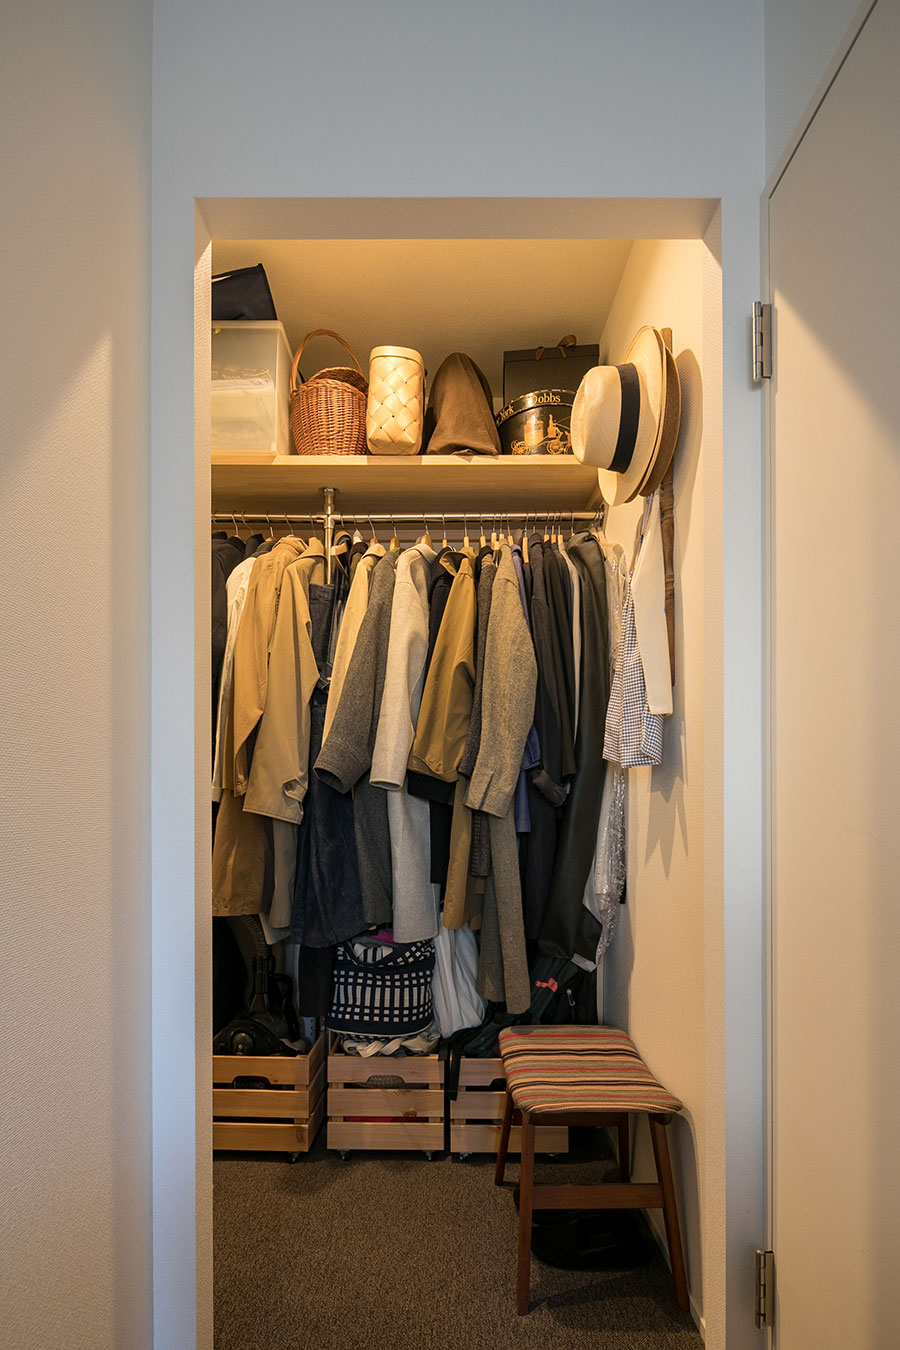 寝室の奥にウォークインクローゼットを作った。「夫の分が増えて手狭になったので、季節の洋服は収納サービスを利用しています」